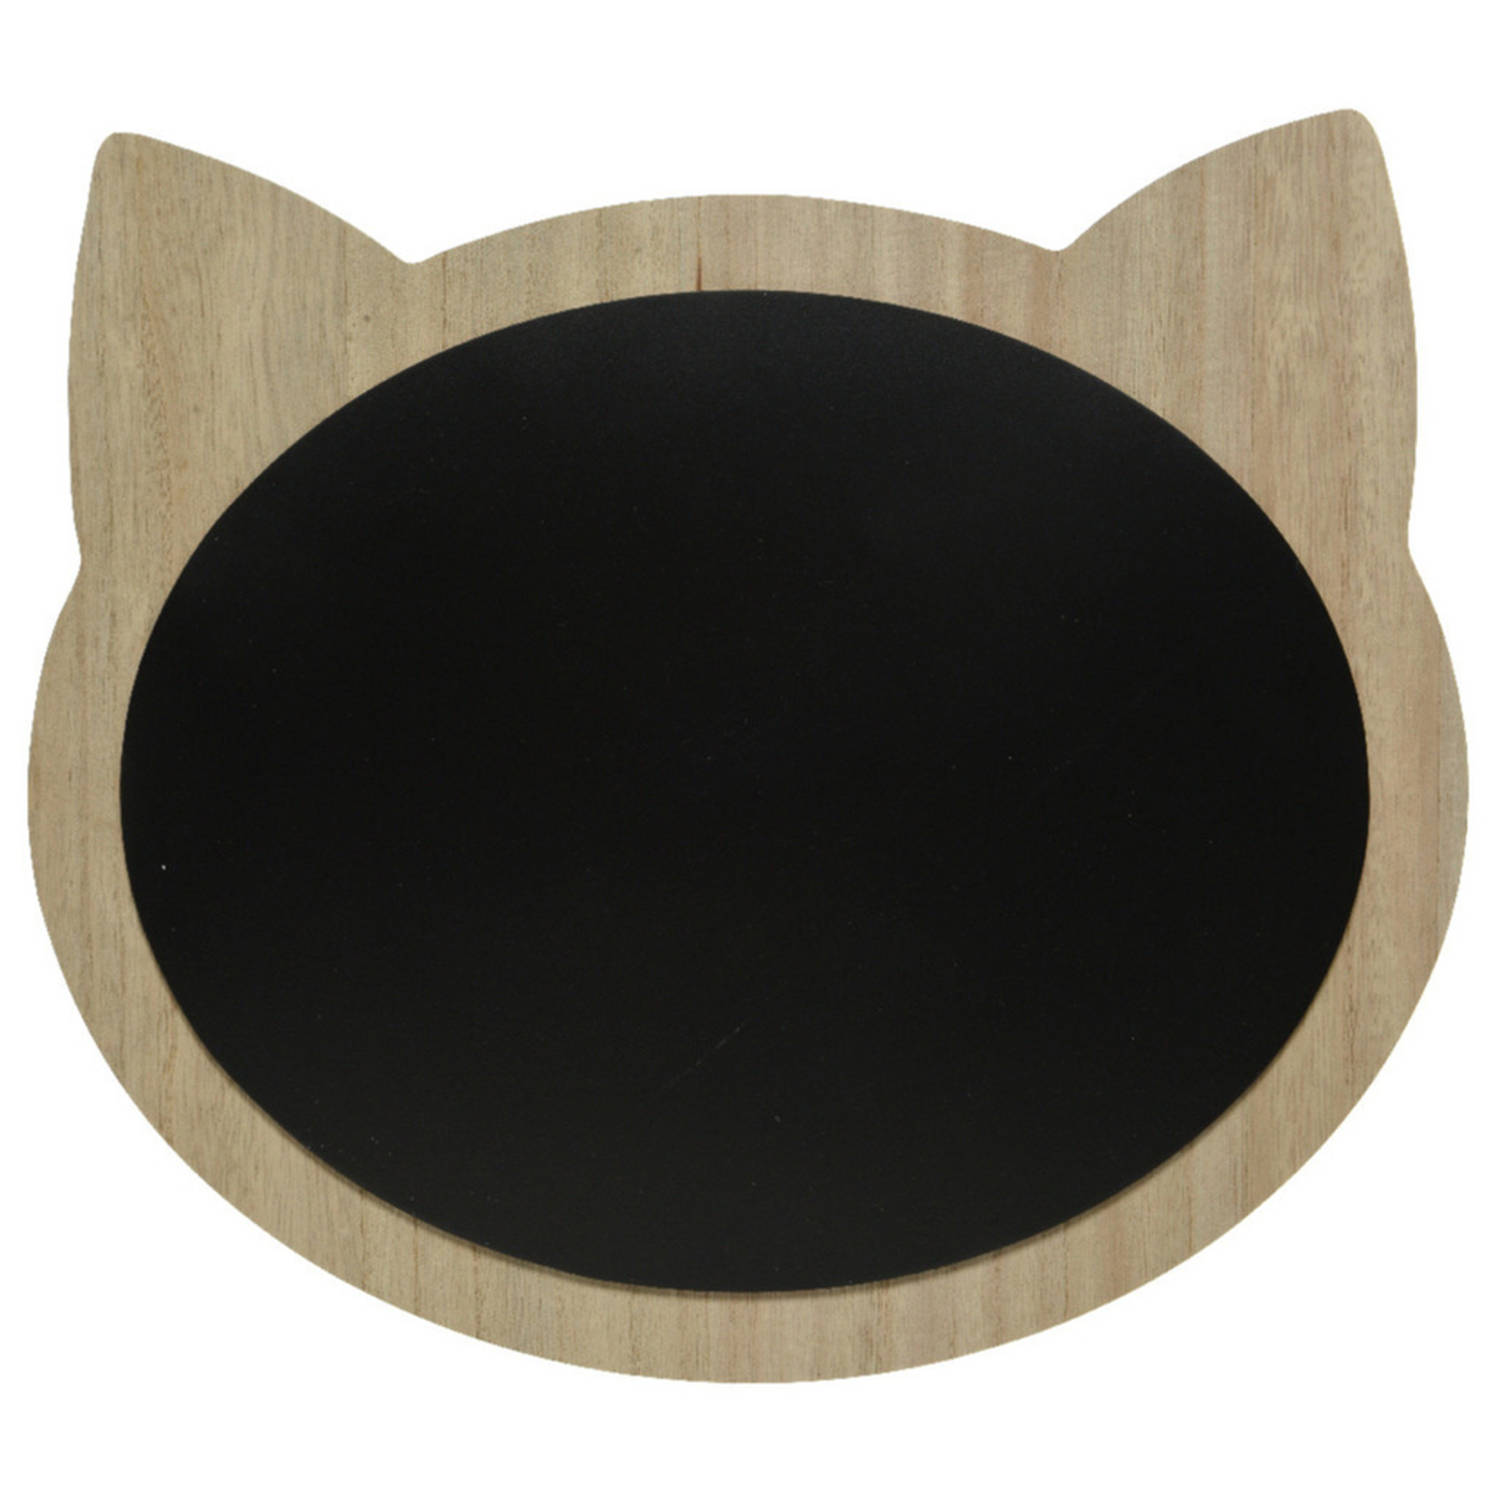 Katten-poezen krijtbord-memobord mdf 40 x 35 cm Krijtborden